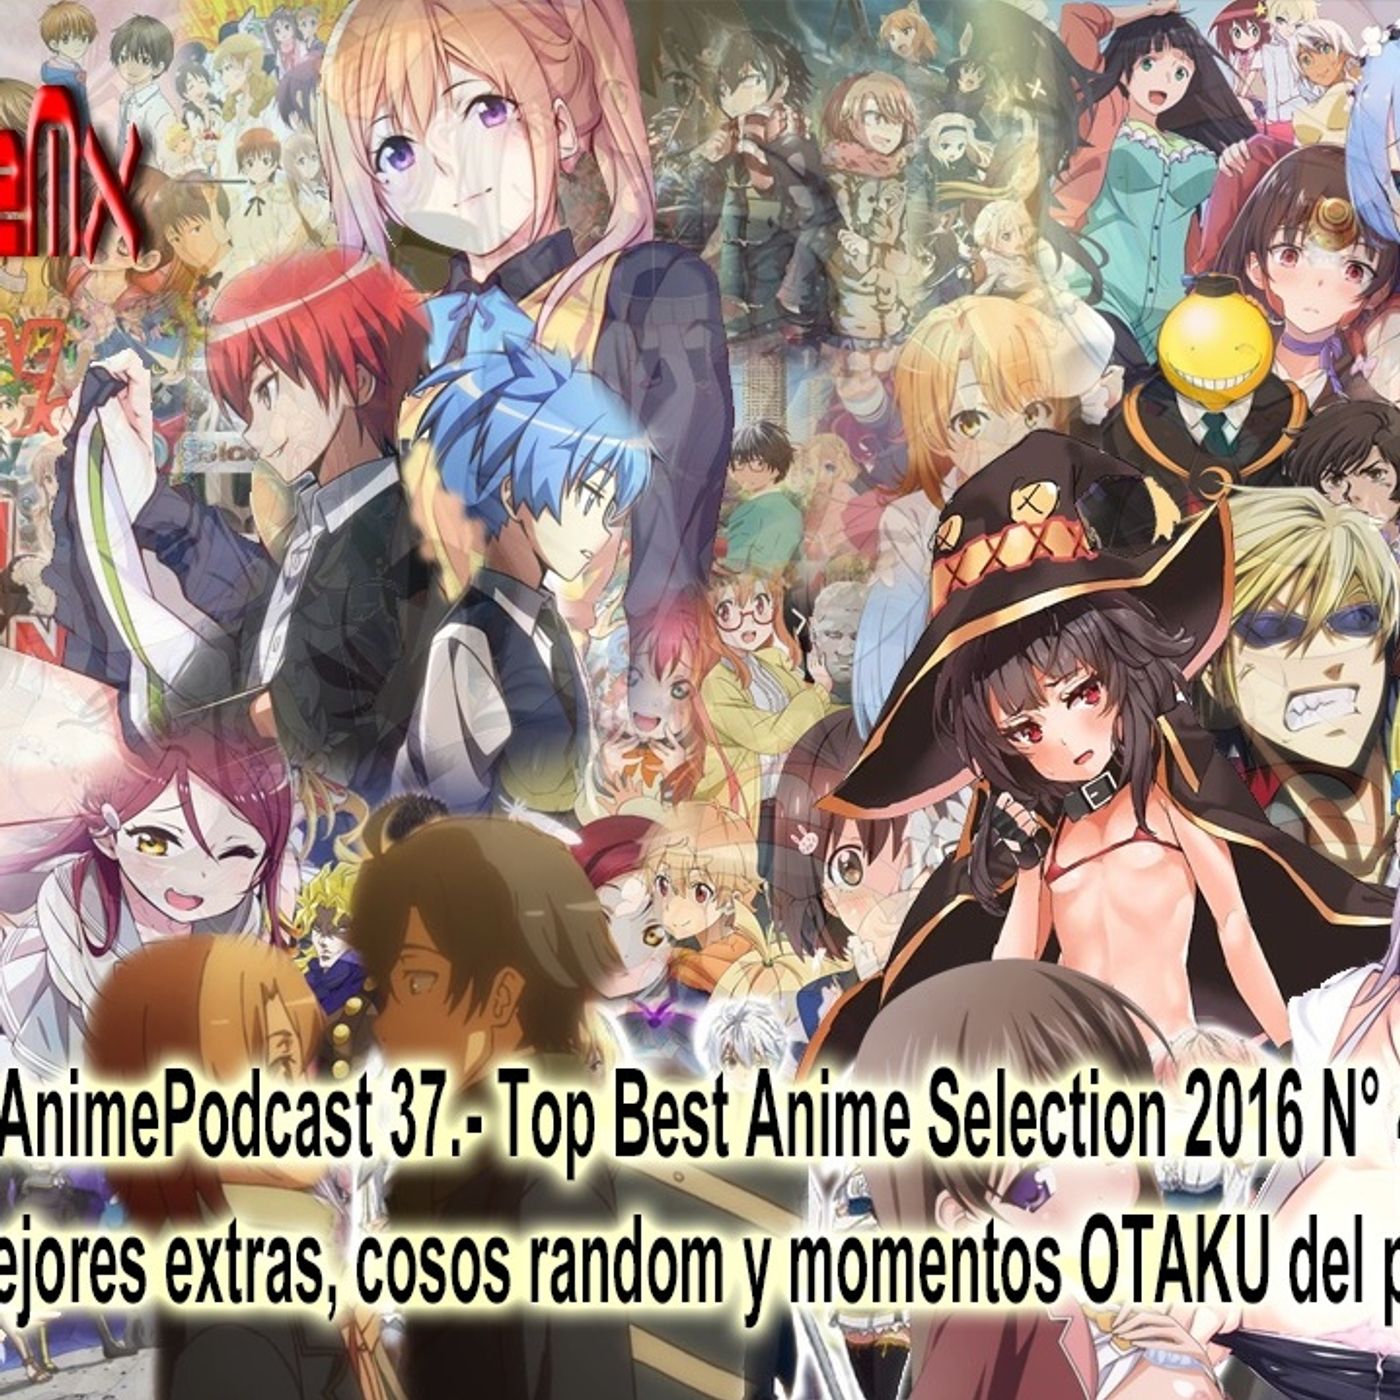 AnimePodcast 34.- Temporada de Otoño 2016 Primeras Impresiones Detectives, Bicicletas y LA CARACOLA MAGICA 1